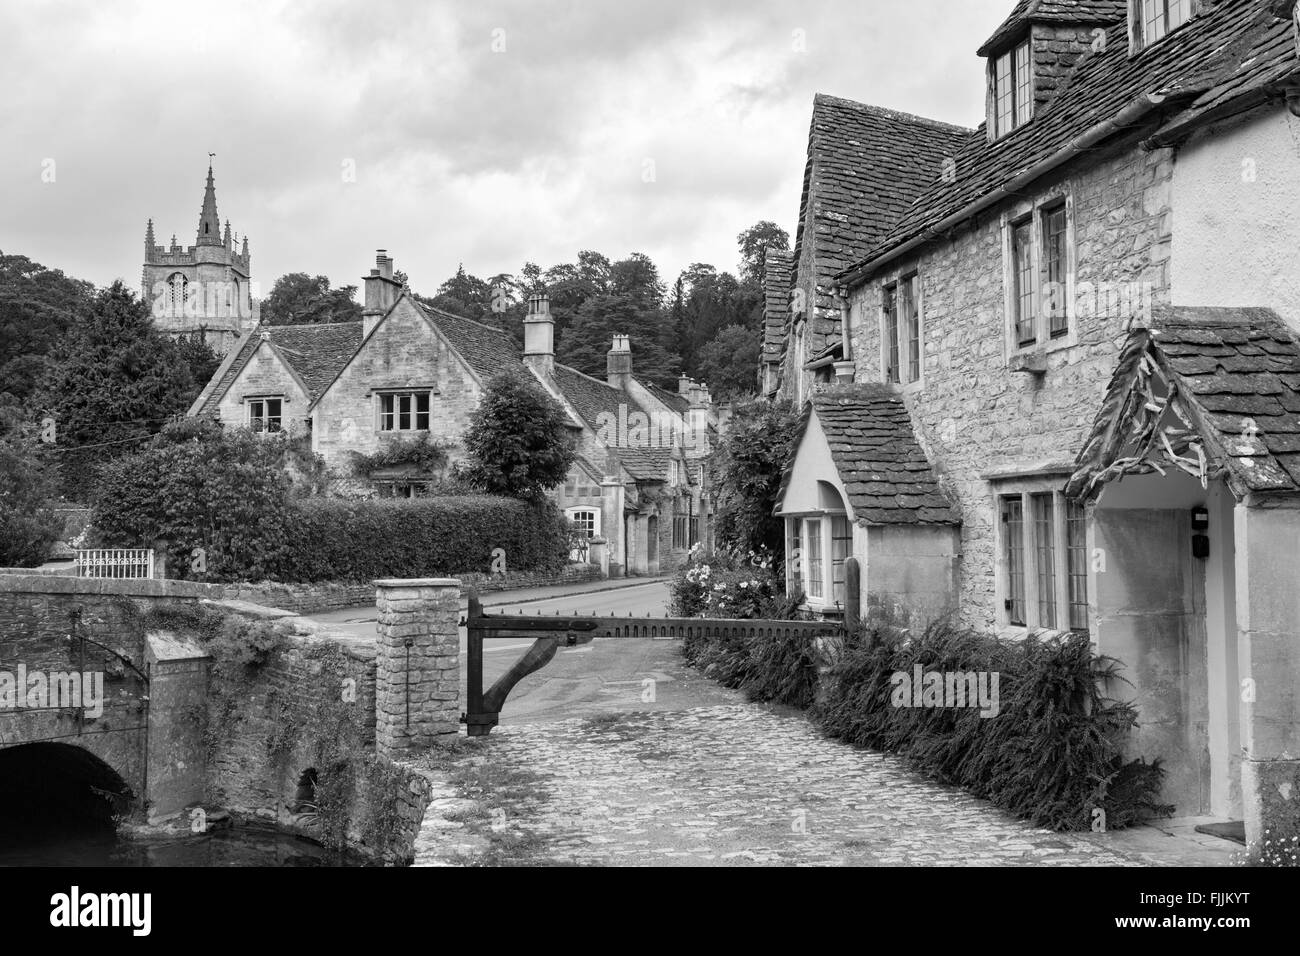 Le Village de Castle Combe en monochrome, Wiltshire, England, UK Banque D'Images